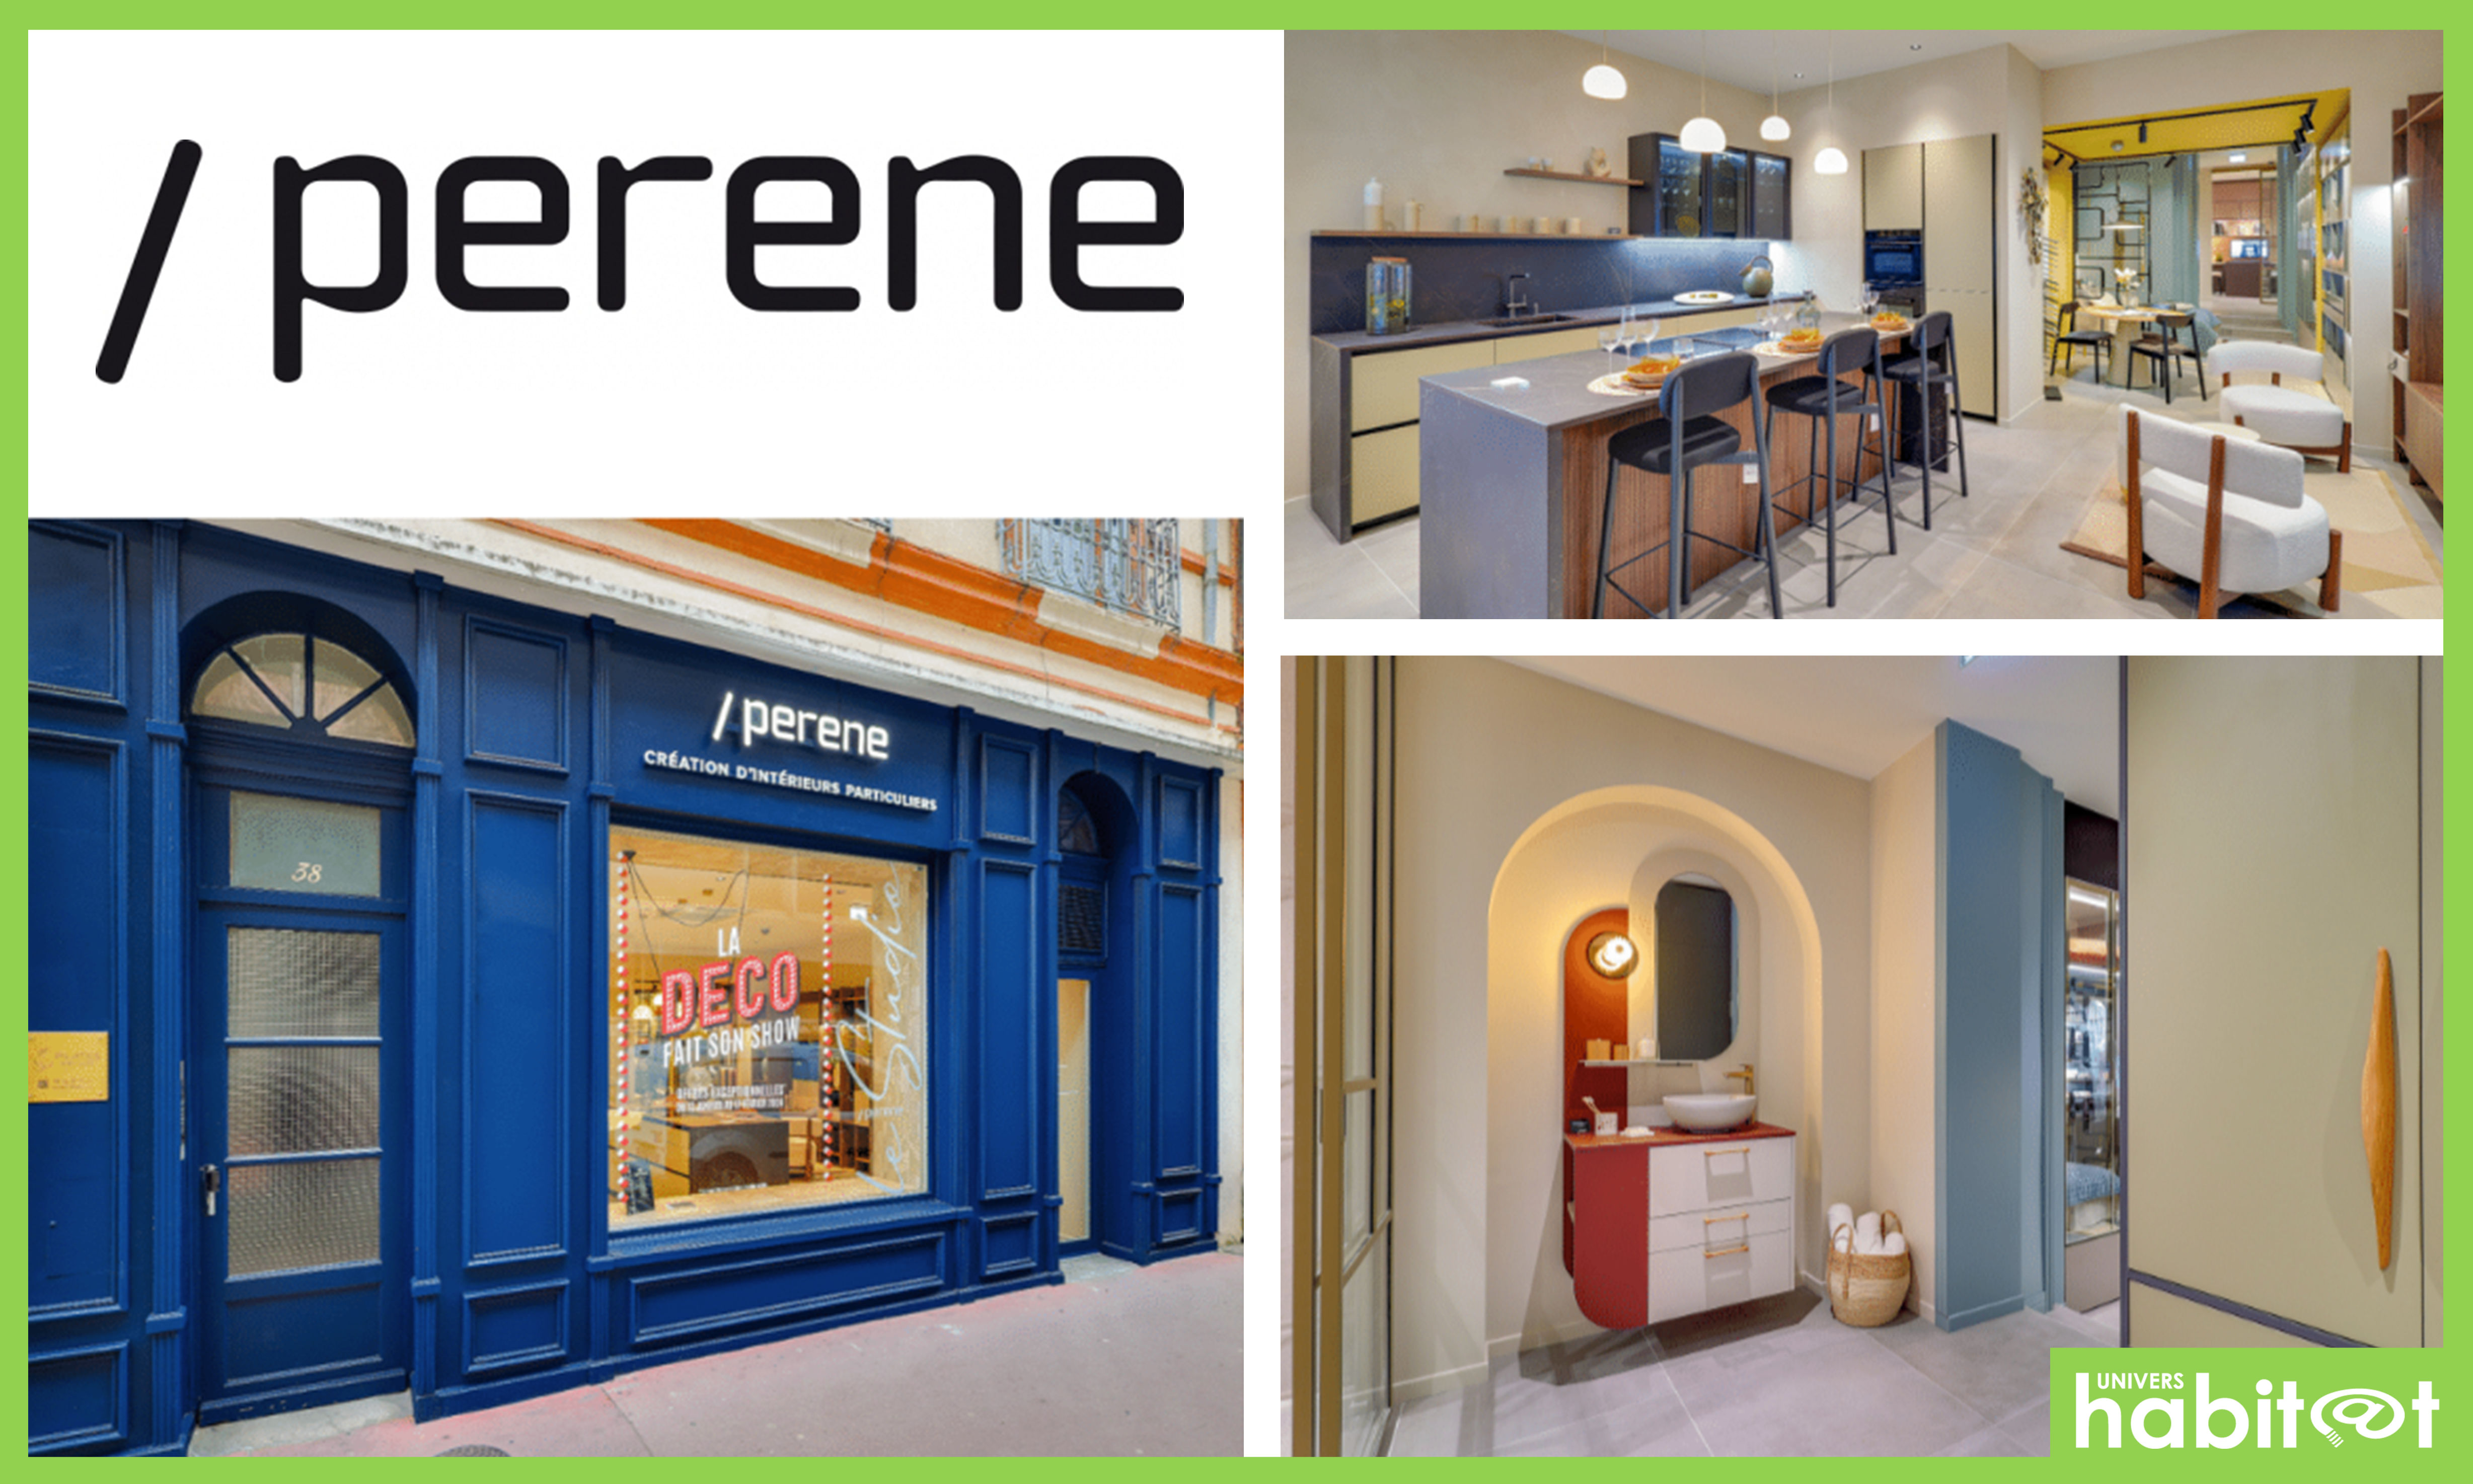 Perene ouvre un nouveau magasin à Toulouse